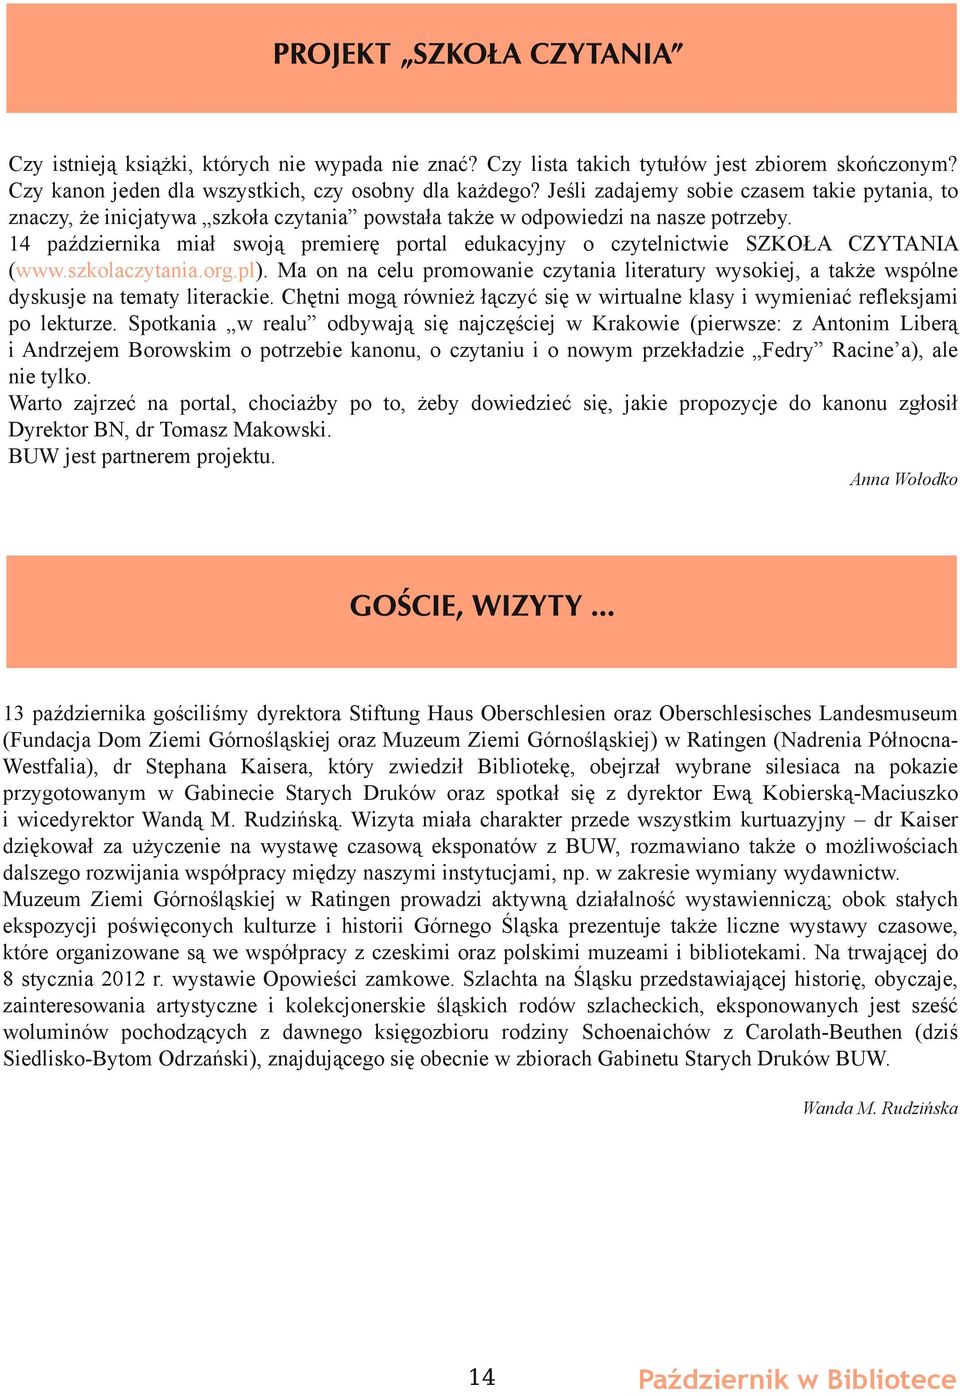 14 października miał swoją premierę portal edukacyjny o czytelnictwie SZKOŁA CZYTANIA (www.szkolaczytania.org.pl).